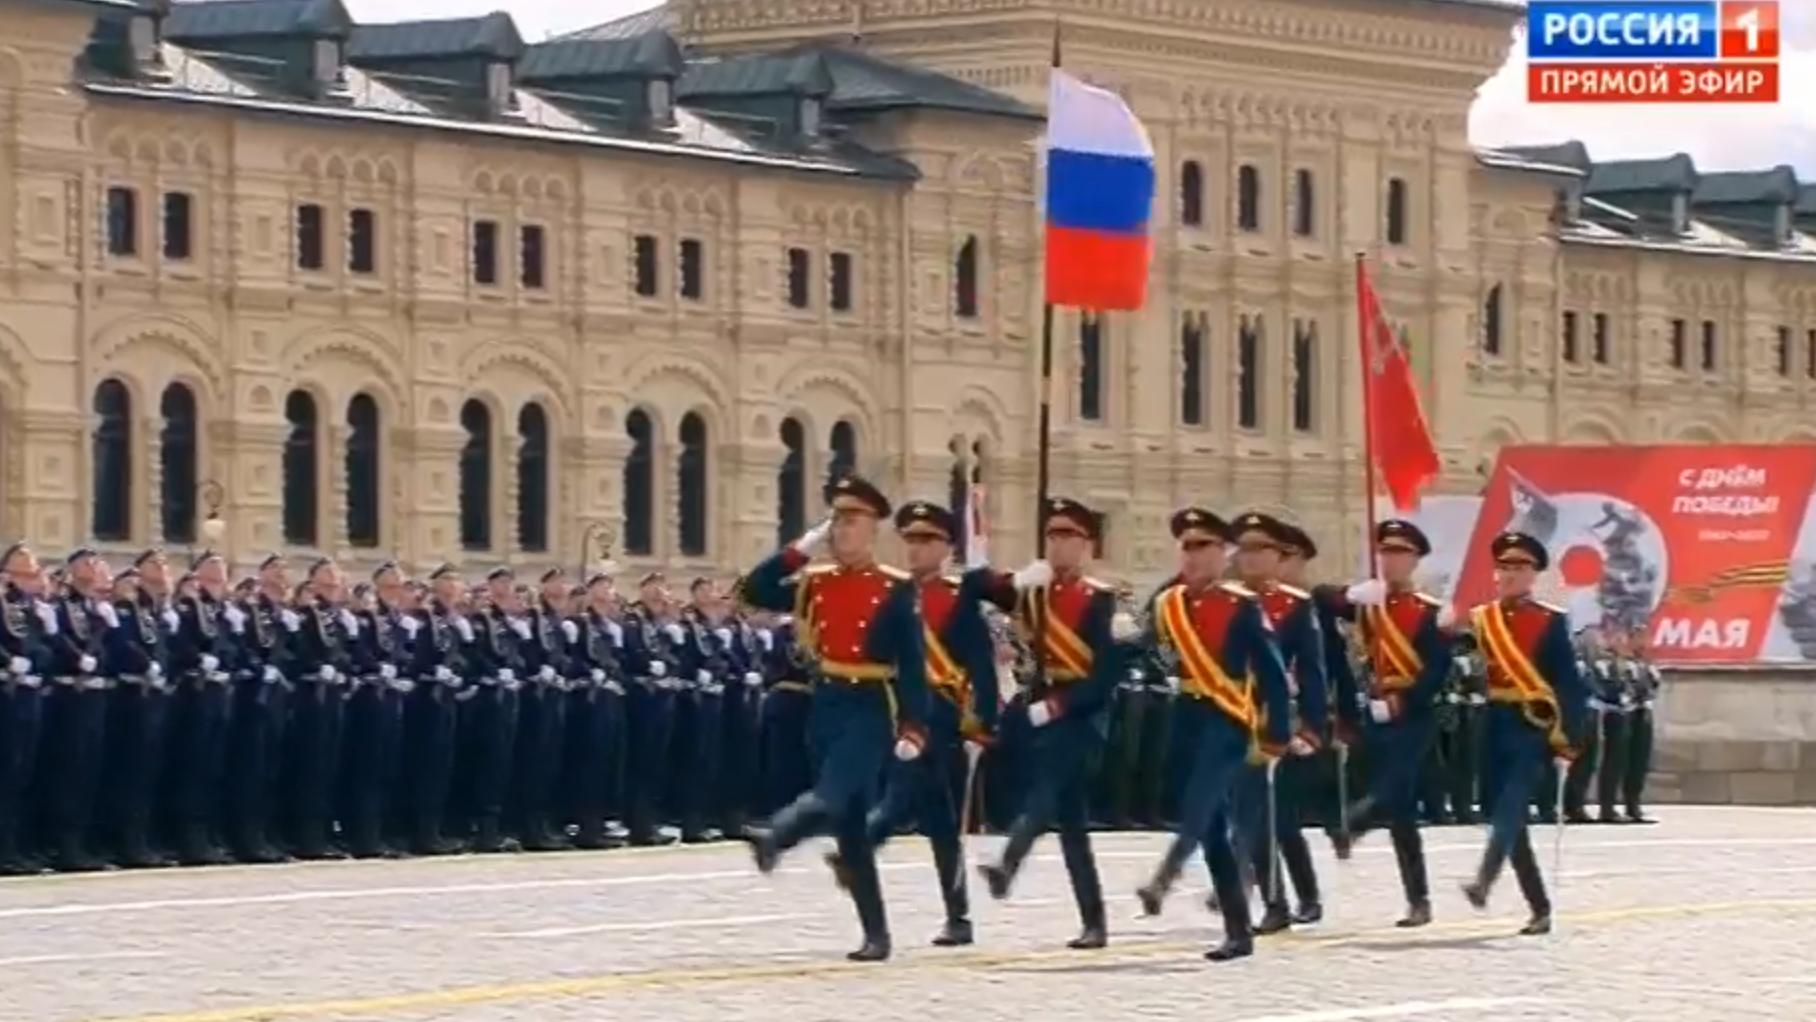 Poczet sztandarowy z flaga Rosjii i ZSRR